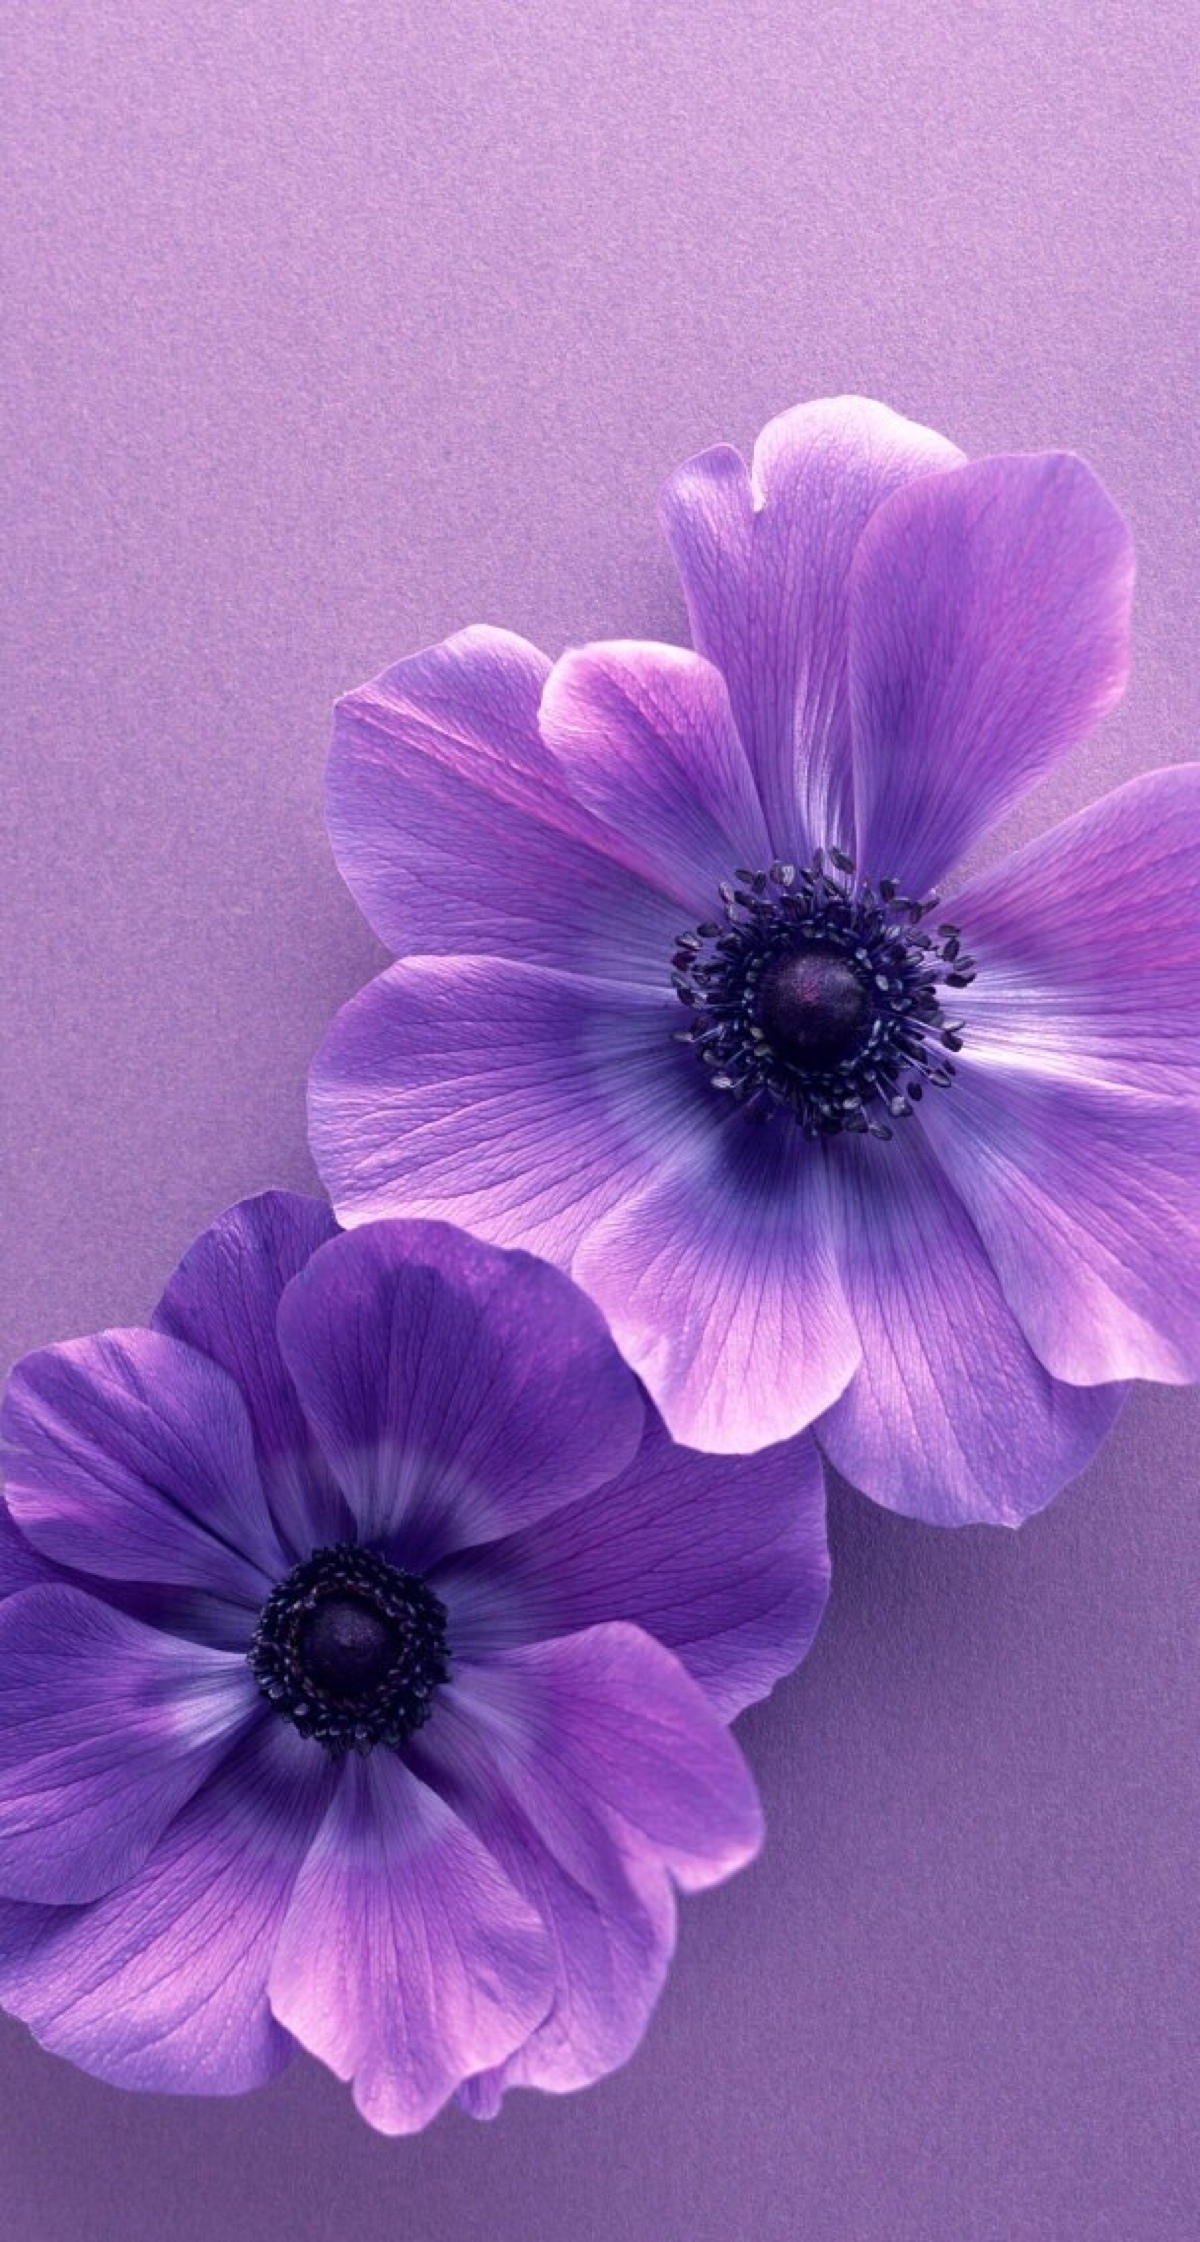 紫色花朵 堆糖 美图壁纸兴趣社区